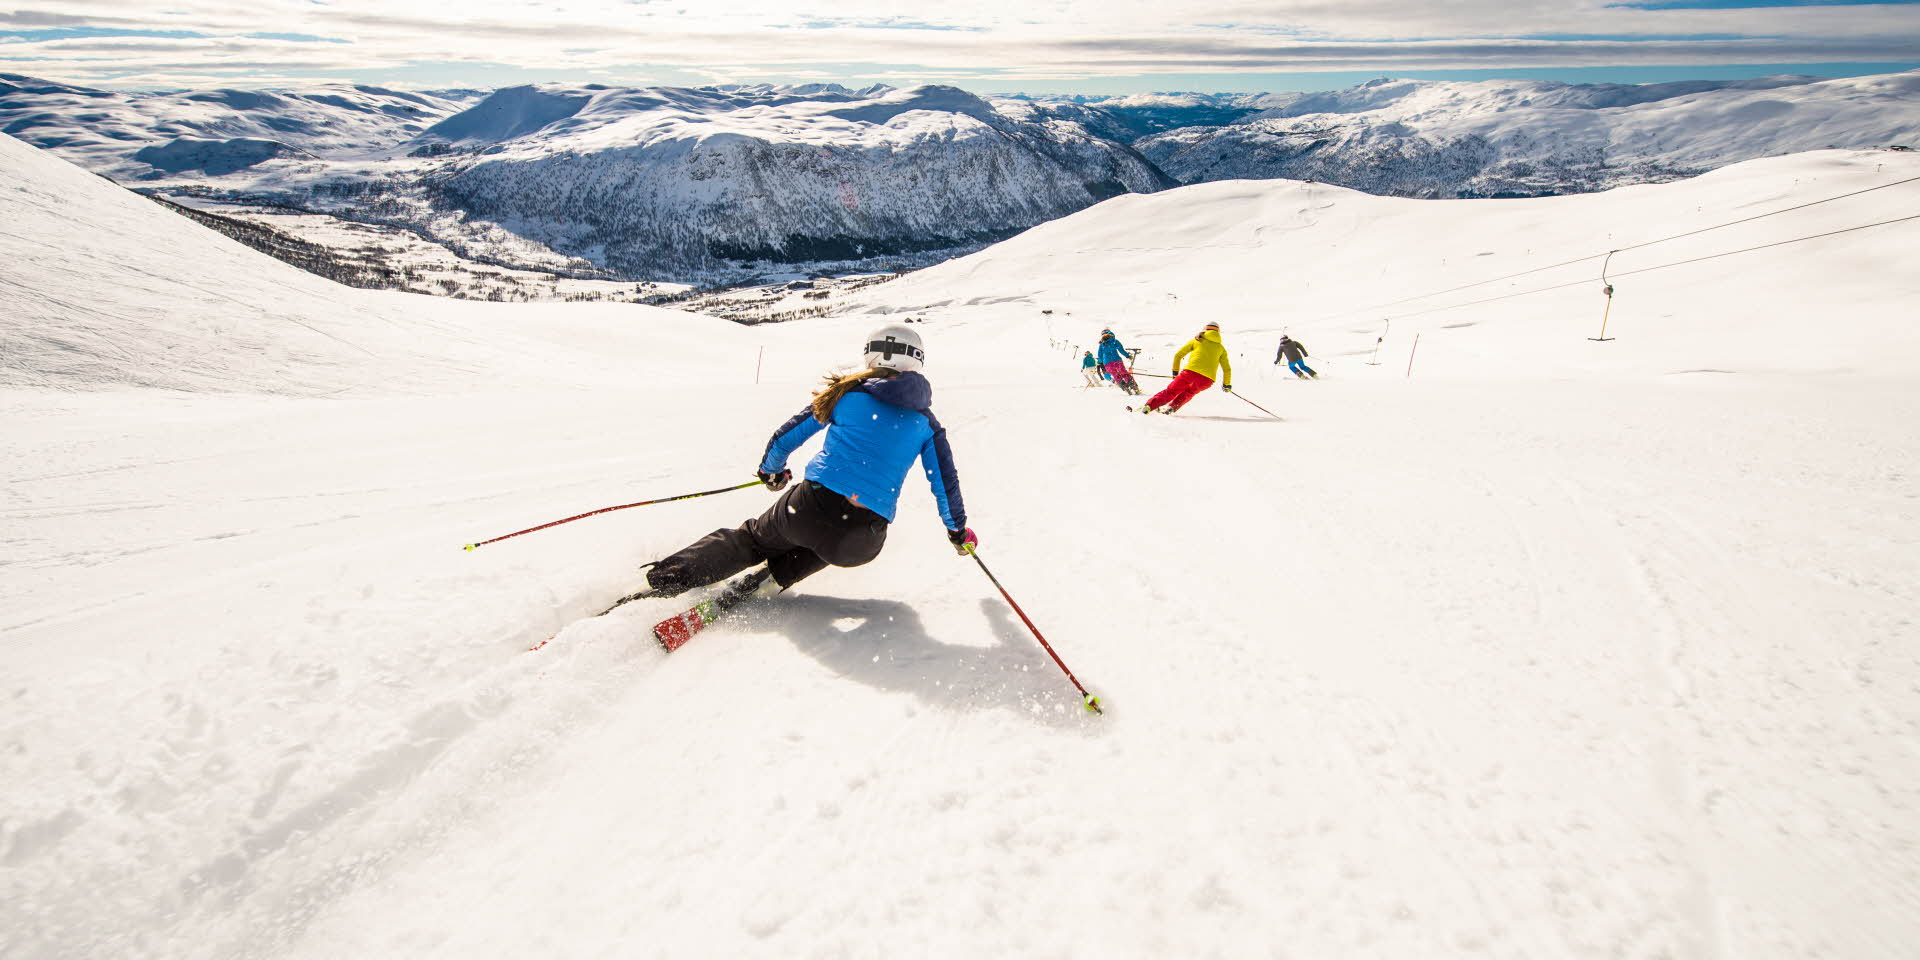 ミルクダレンマウンテンリゾートの斜面をスキーで滑る女の子 